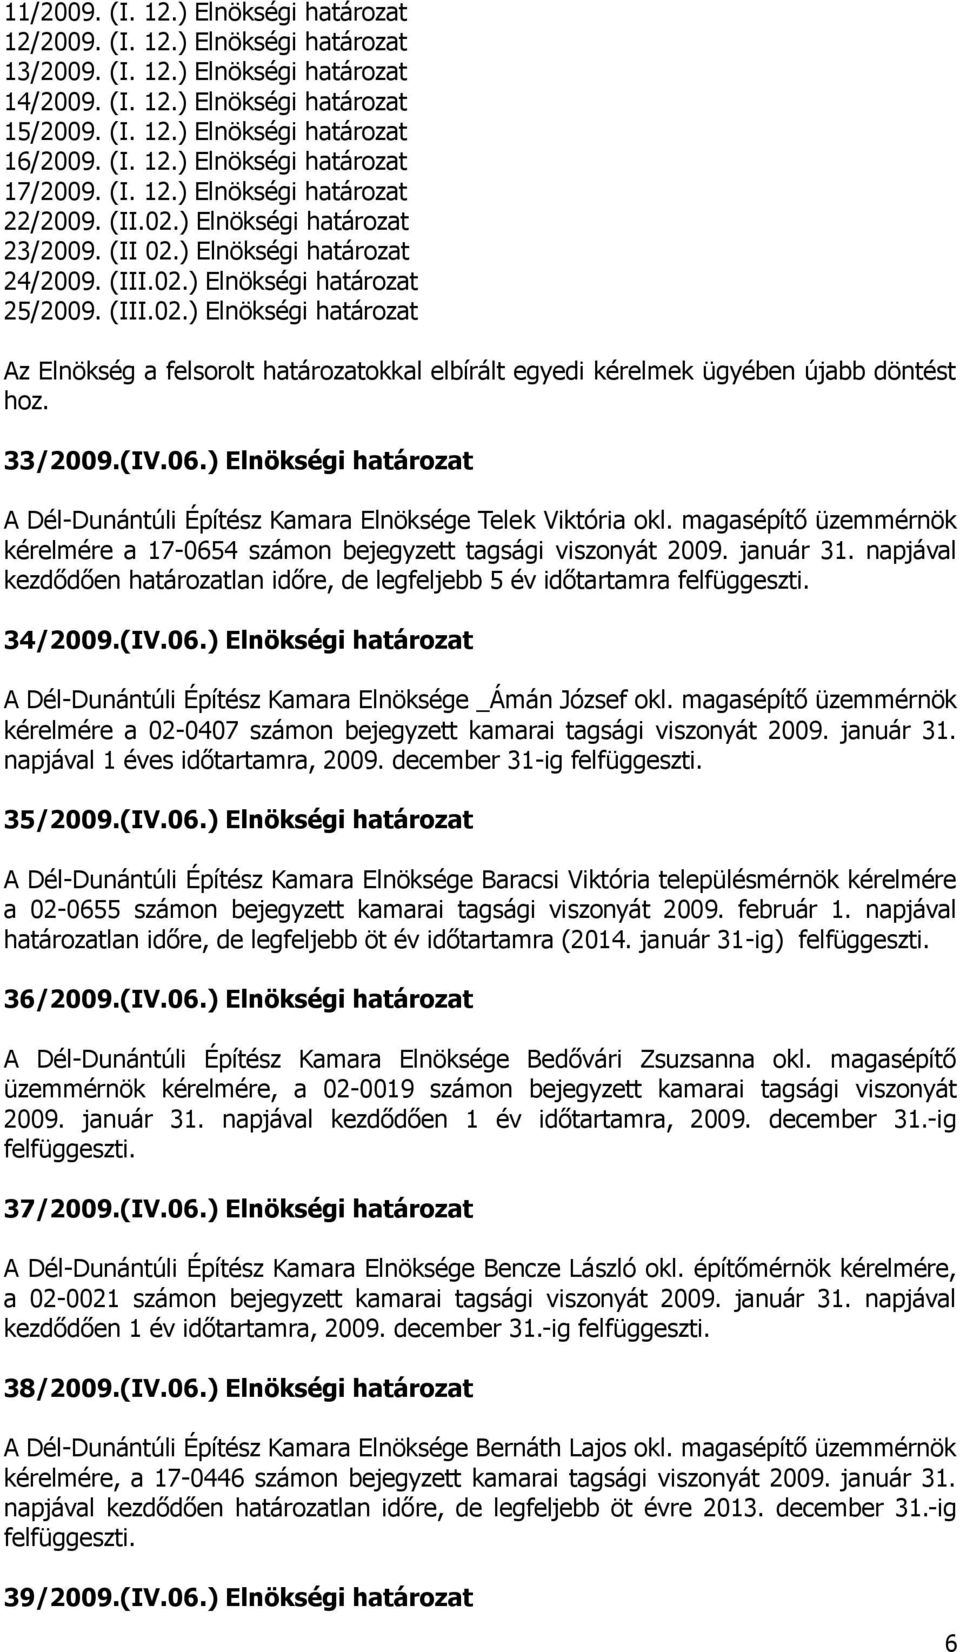 33/2009.(IV.06.) Elnökségi határozat A Dél-Dunántúli Építész Kamara Elnöksége Telek Viktória okl. magasépítő üzemmérnök kérelmére a 17-0654 számon bejegyzett tagsági viszonyát 2009. január 31.